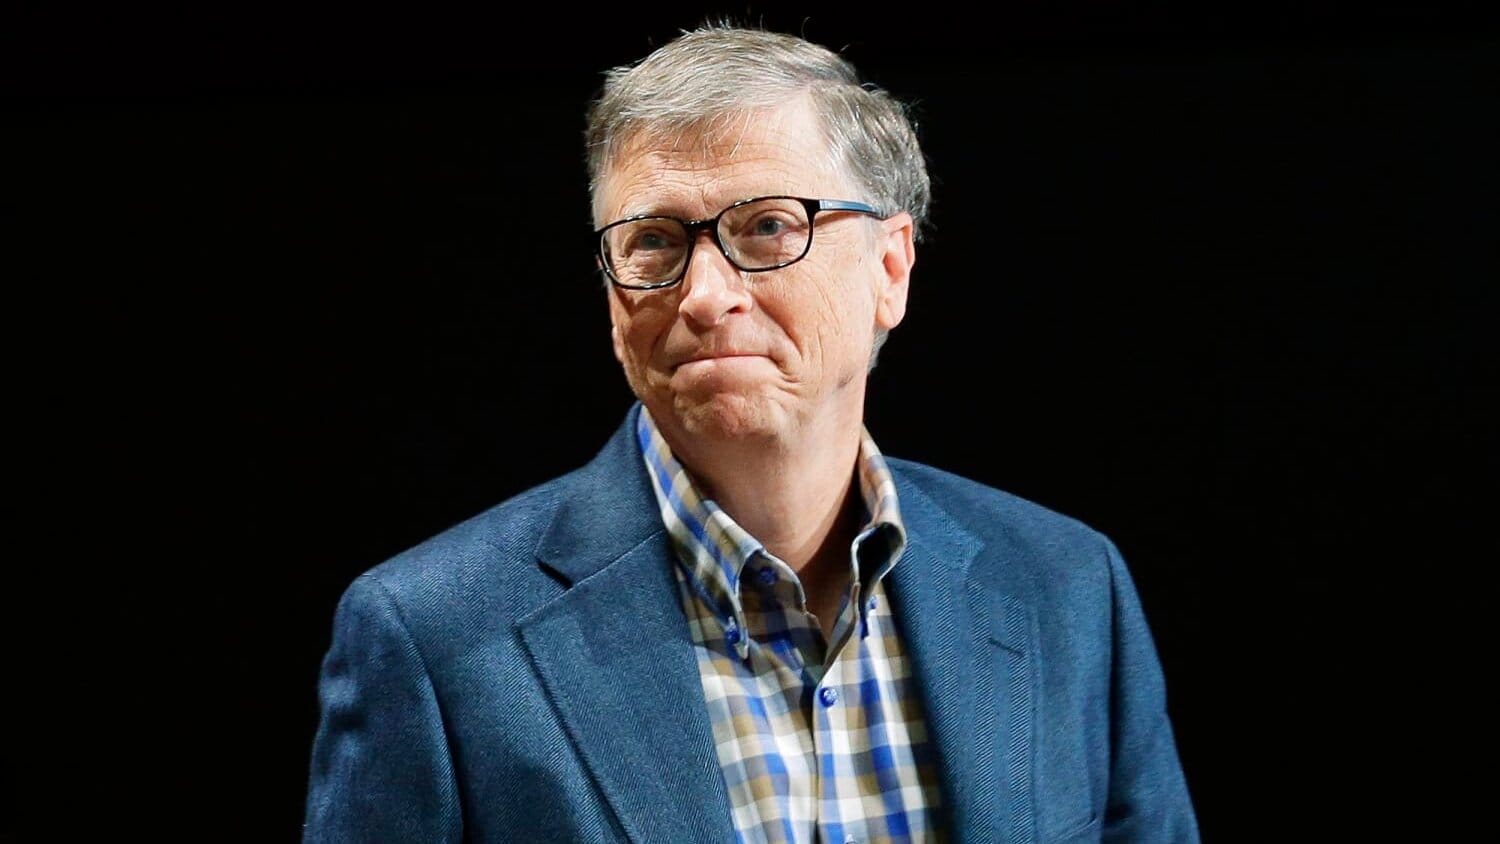 Стив Балмер обогнал в рейтинге миллиардеров Билла Гейтса, своего бывшего работодателя